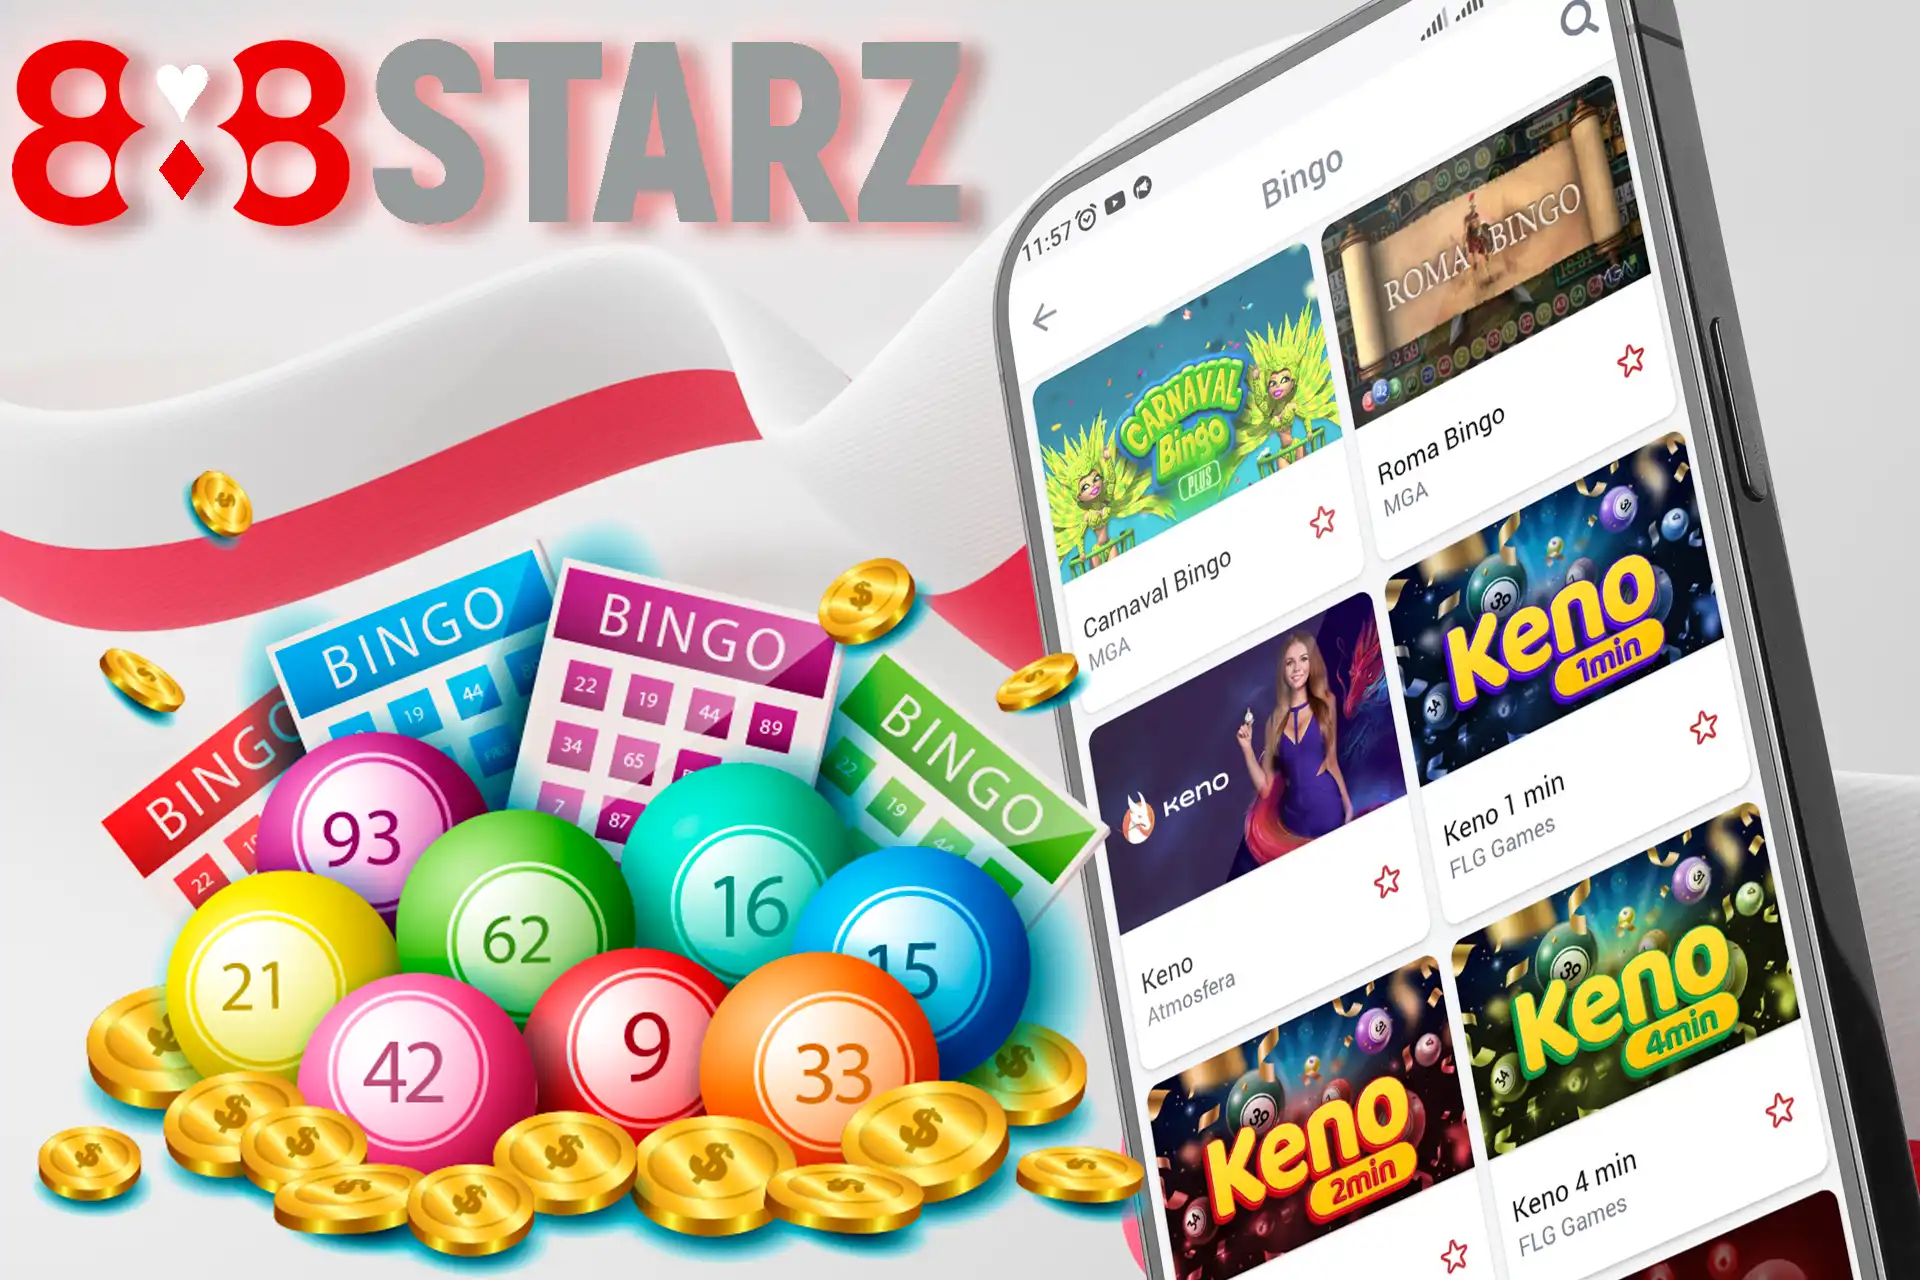 Duży wybór gier Bingo w kasynie 888Starz